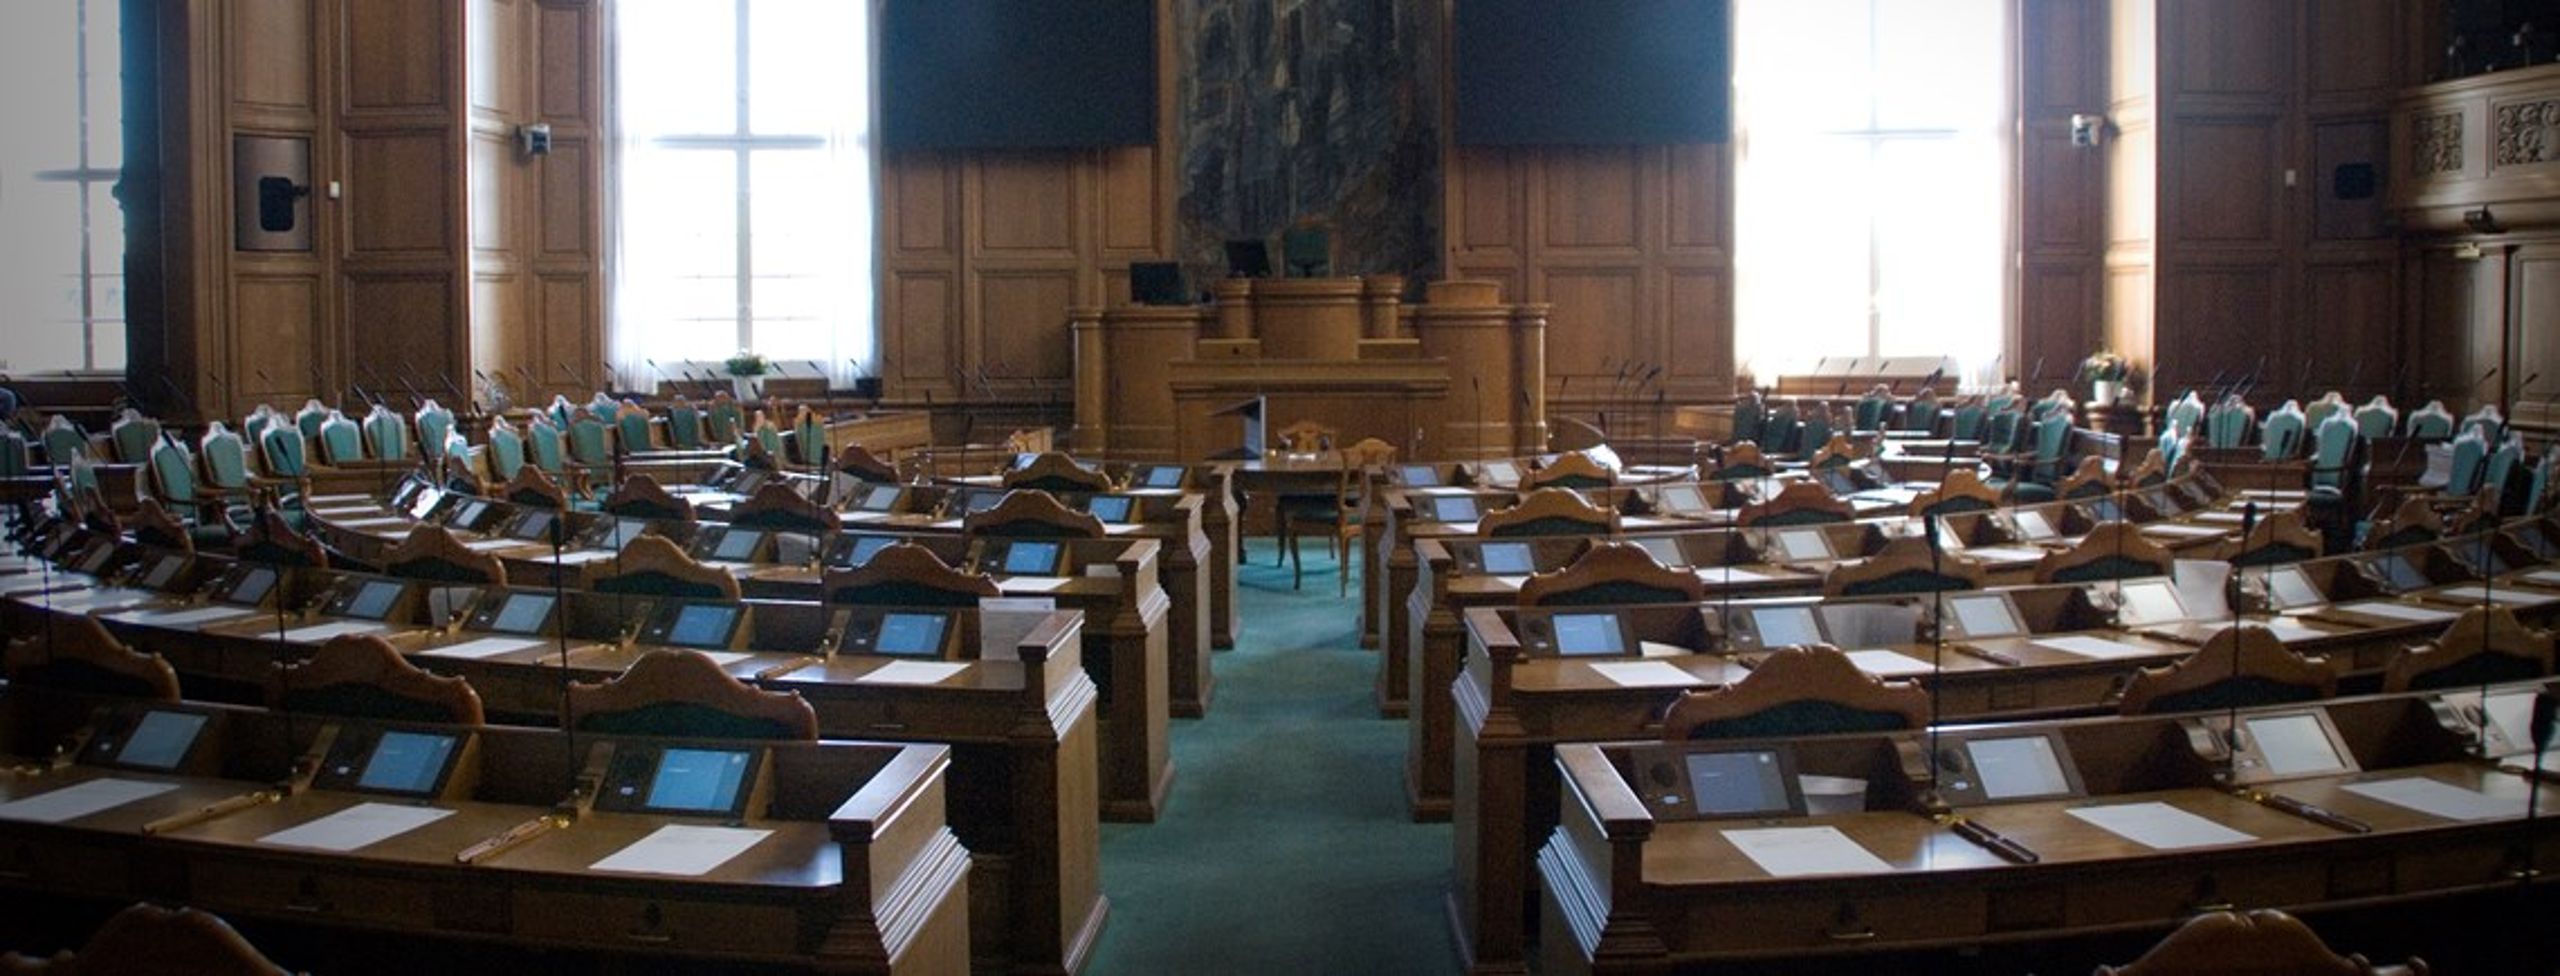 Alle Folketingets energi- og klimaordførere kan efter alt at dømme stadig kalde Christiansborg for deres arbejdsplads efter valget torsdag. Kun Enhedslistens Per Clausen forlader med sikkerhed sin plads.&nbsp;